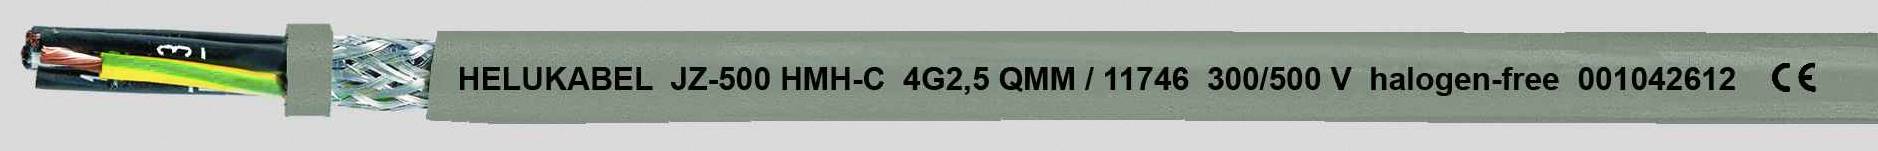 HELUKABEL JZ-500 HMH-C Steuerleitung 7 G 0.50 mm² Grau 11660-500 500 m